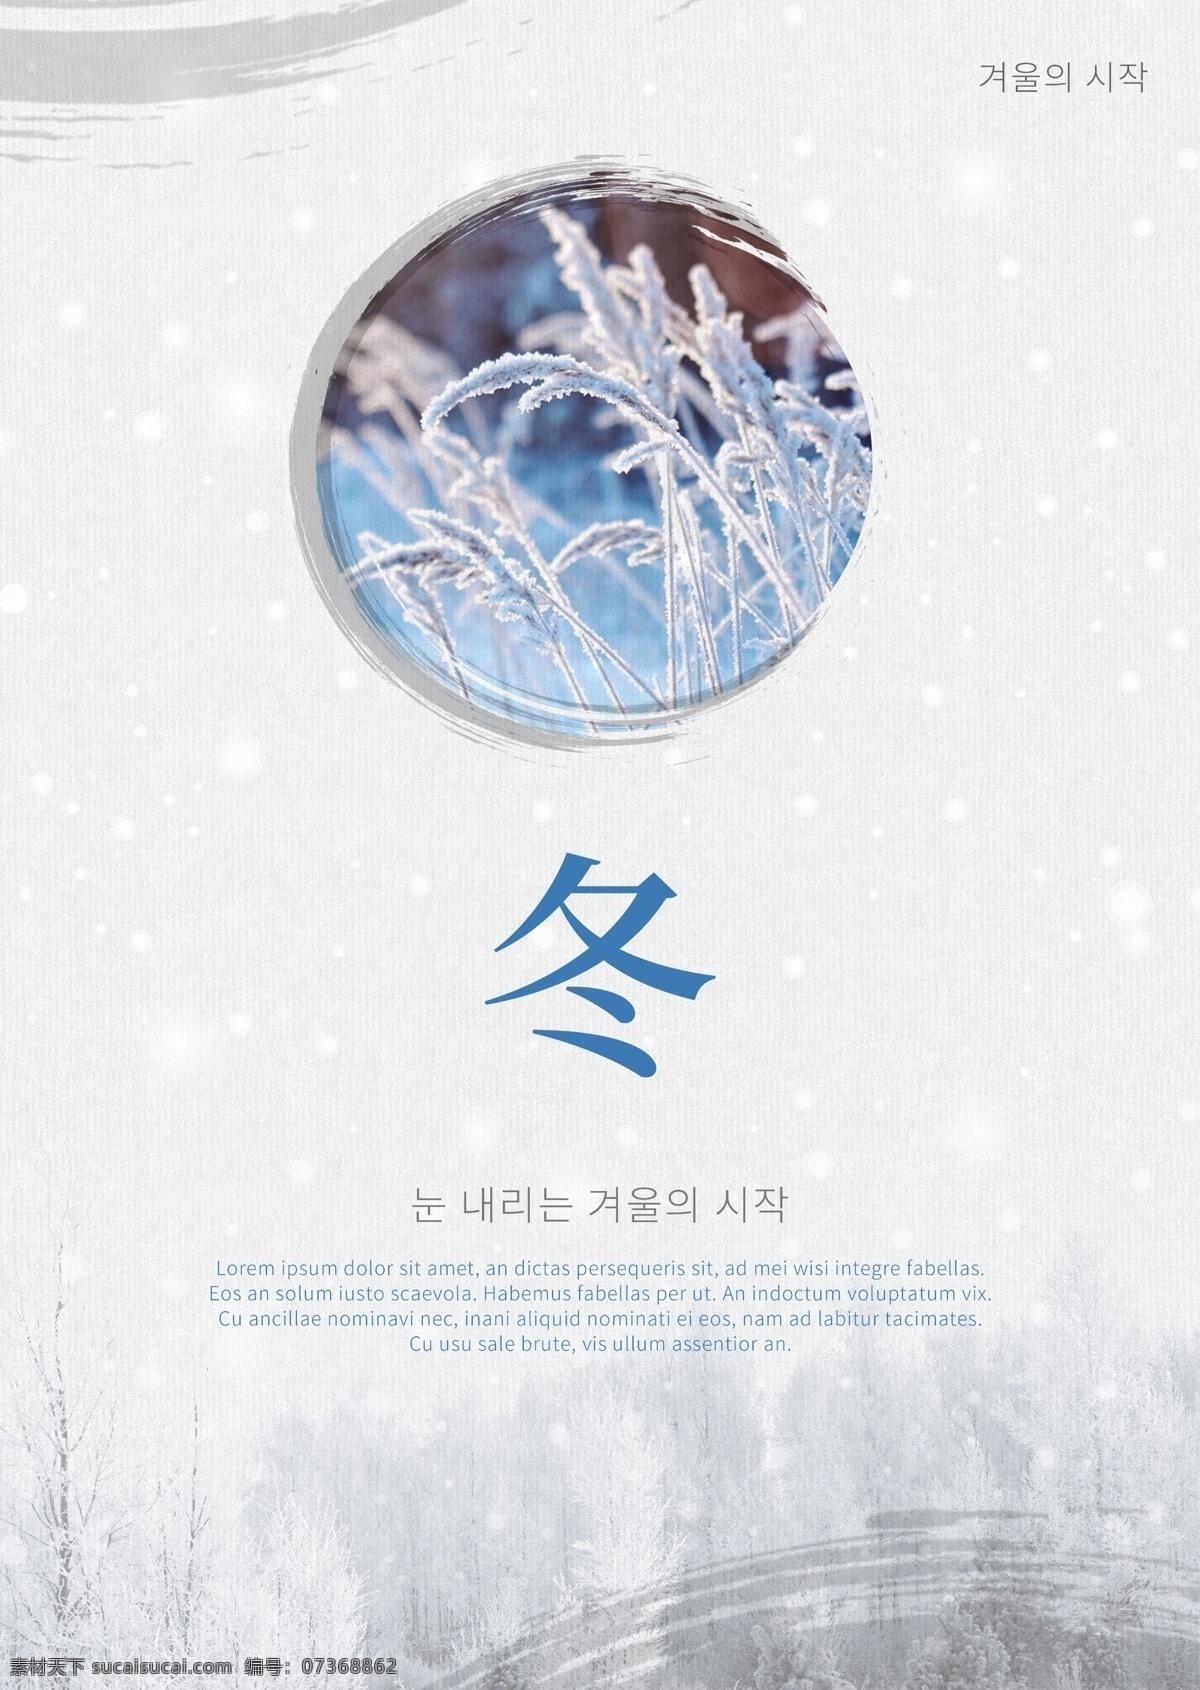 灰色 白色 简单 风景 墨水 冬天 海报 墨 冬季 朝鲜的 中文 英语 分支机构 空白 落下 落叶 雪 飘落的雪花 蓝色